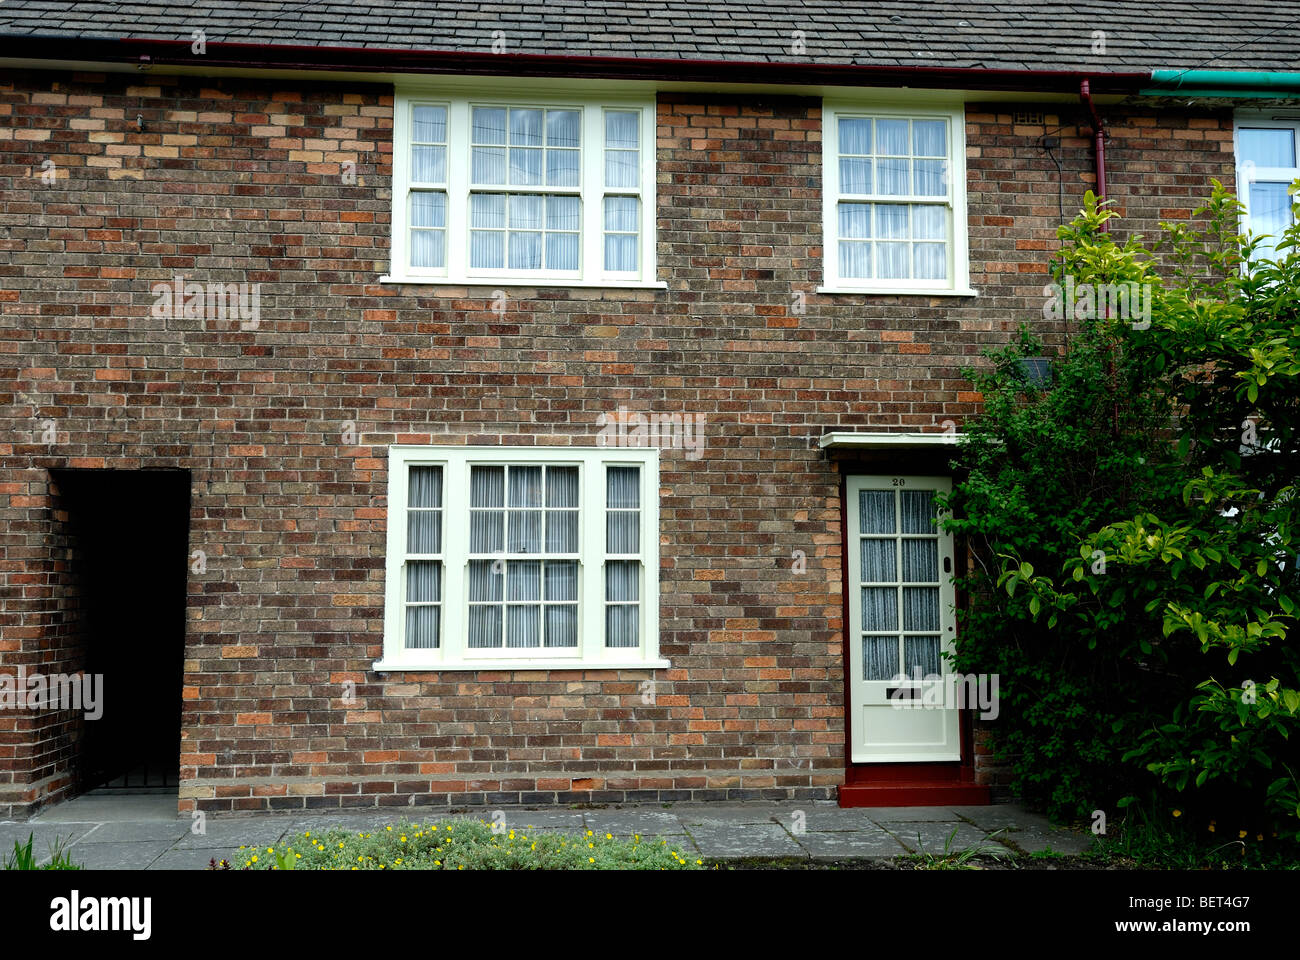 20 Forthlin Road Liverpool Casa d'infanzia di Paul McCartney dei Beatles. Immagine presa da un luogo pubblico Foto Stock